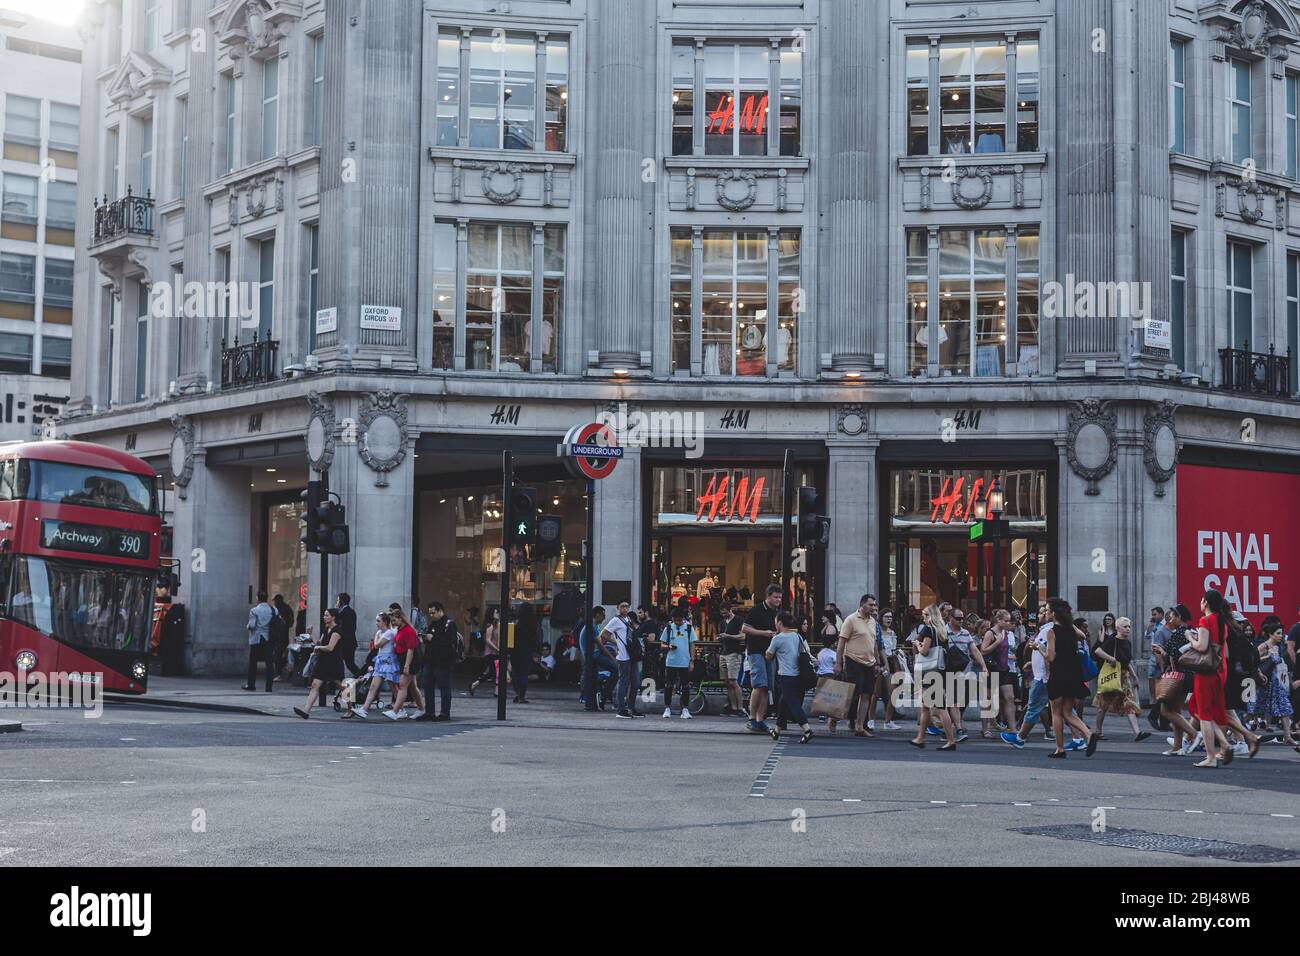 London/UK-24/07/18: H&M Kaufhaus am Oxford Circus in London. H&M ist ein  schwedisches multinationales Bekleidungseinzelhandelsunternehmen, das für  seine schnelle Mode bekannt ist Stockfotografie - Alamy